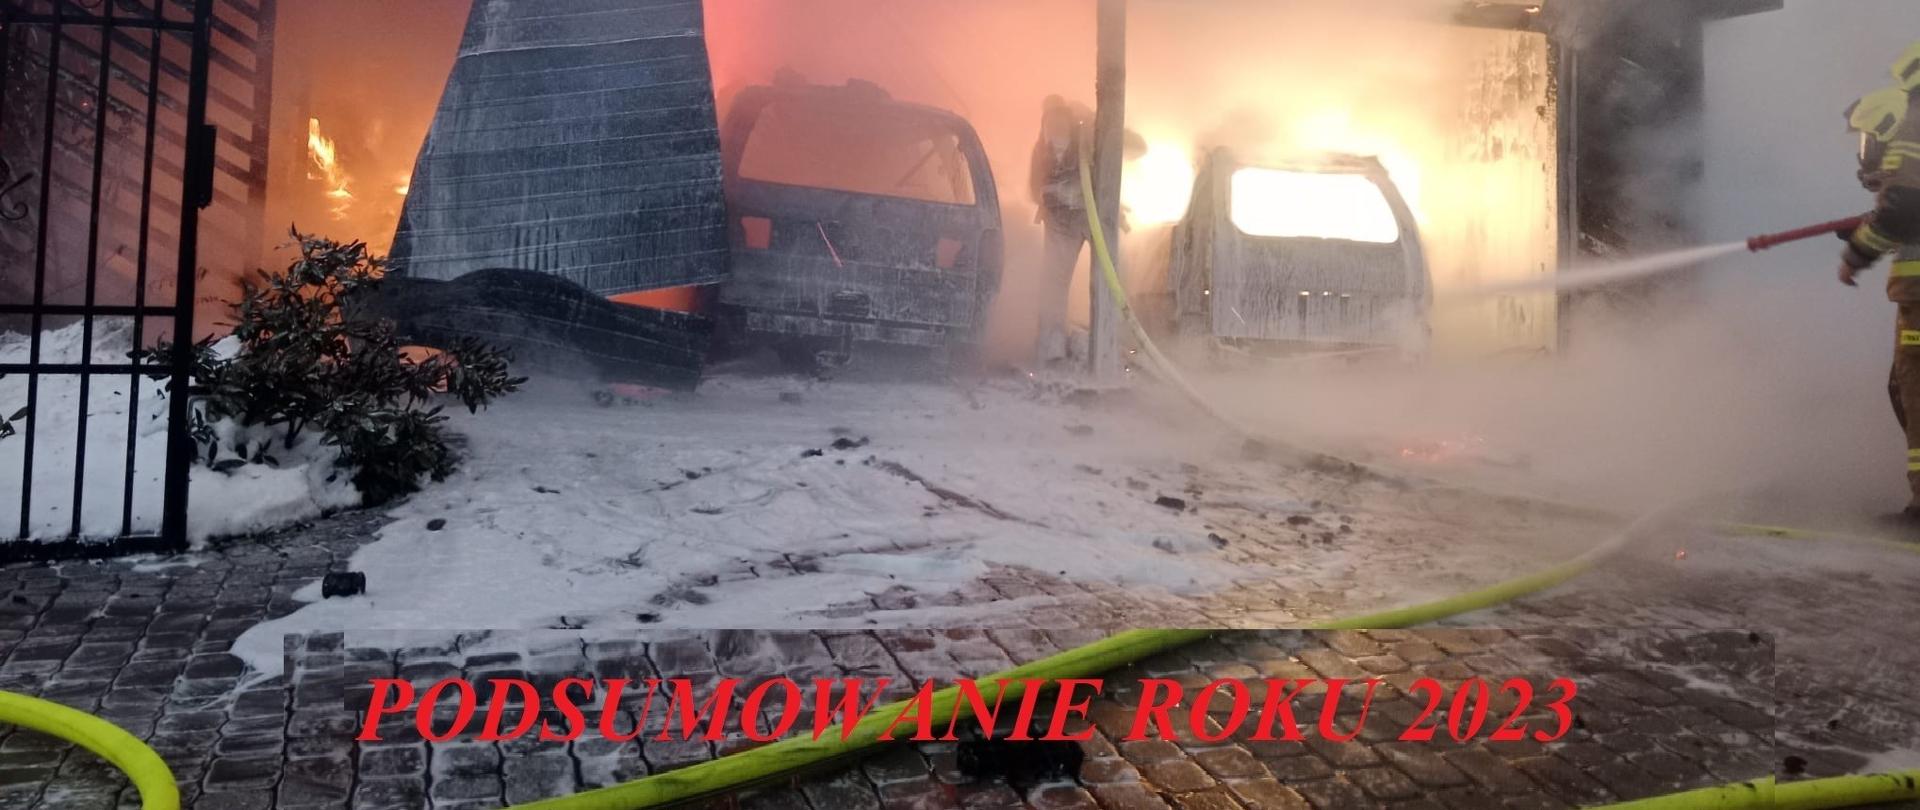 Fotografia wykonana w pochmurny dzień podczas gaszenia wiaty garażowej i samochodów w środku. Strażacy ubrani w ubrania specjalne podają pianę gaśniczą. Na dole zdjęcia napis "Podsumowanie roku 2023"